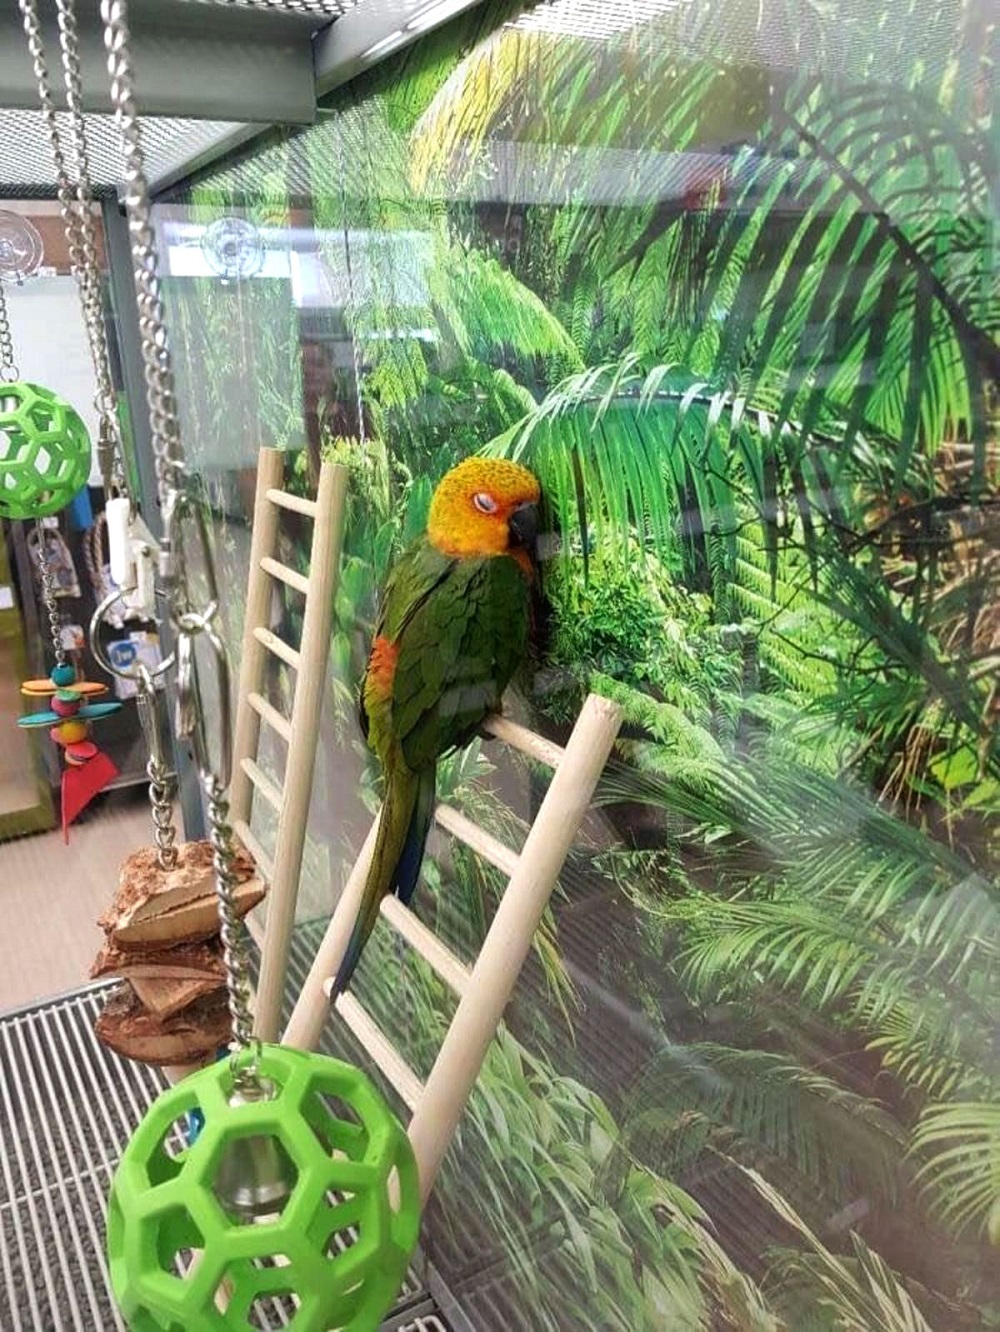 Papagei vermisst sein Zuhause